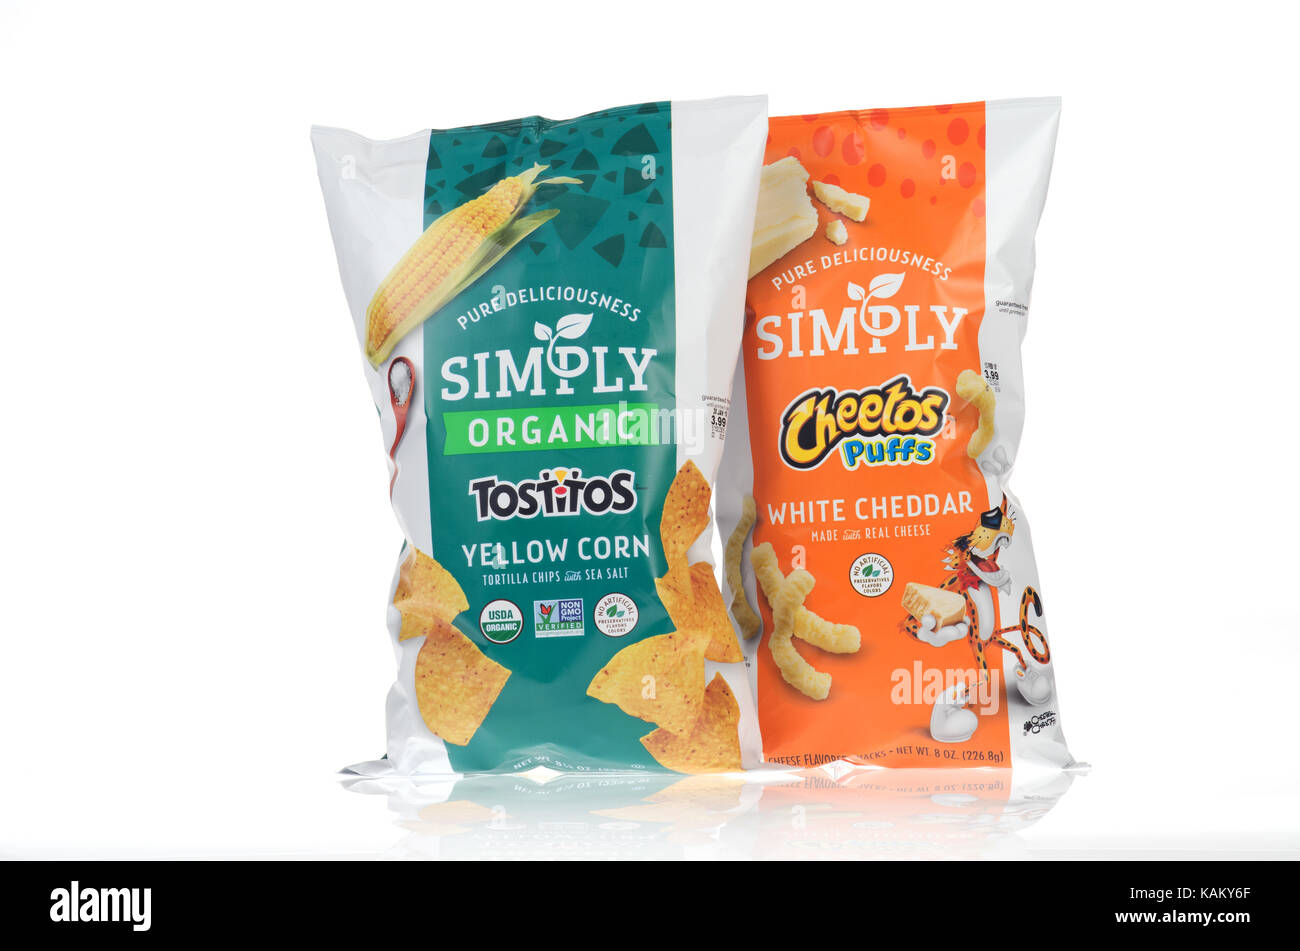 Sacs de Frito-Lay Tostitos biologiques simplement simplement avec chips de maïs Cheetos Puffs Banque D'Images